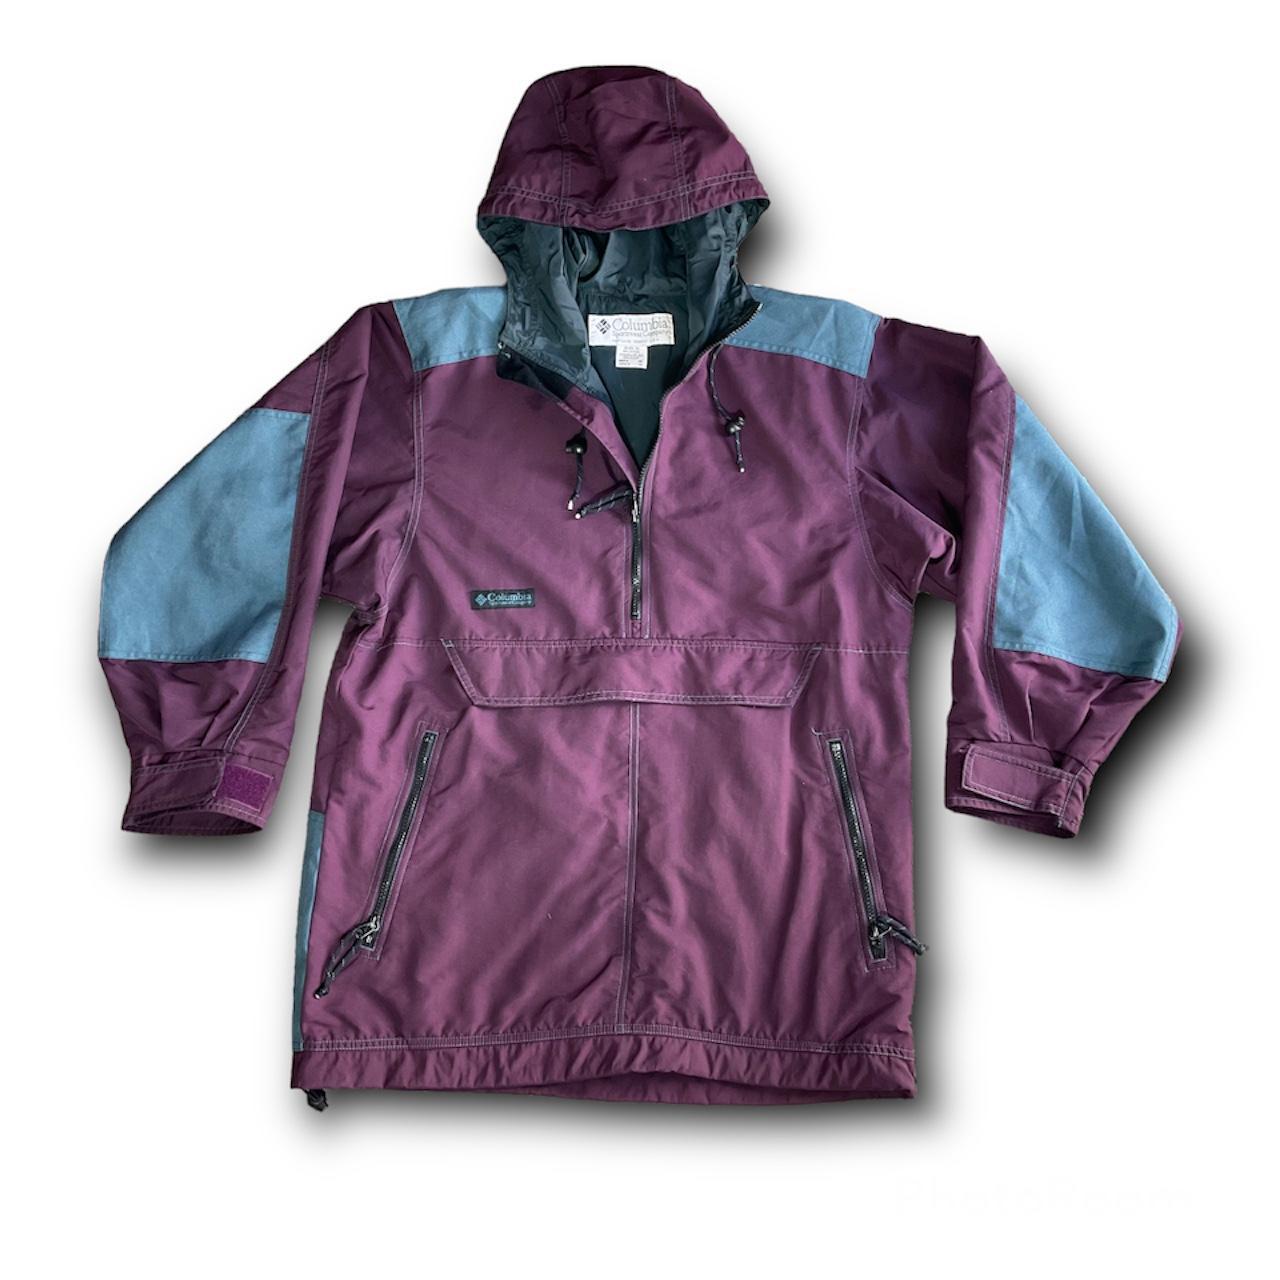 Vintage 90s Columbia Sportswear Company Jacket 1/2... - Depop